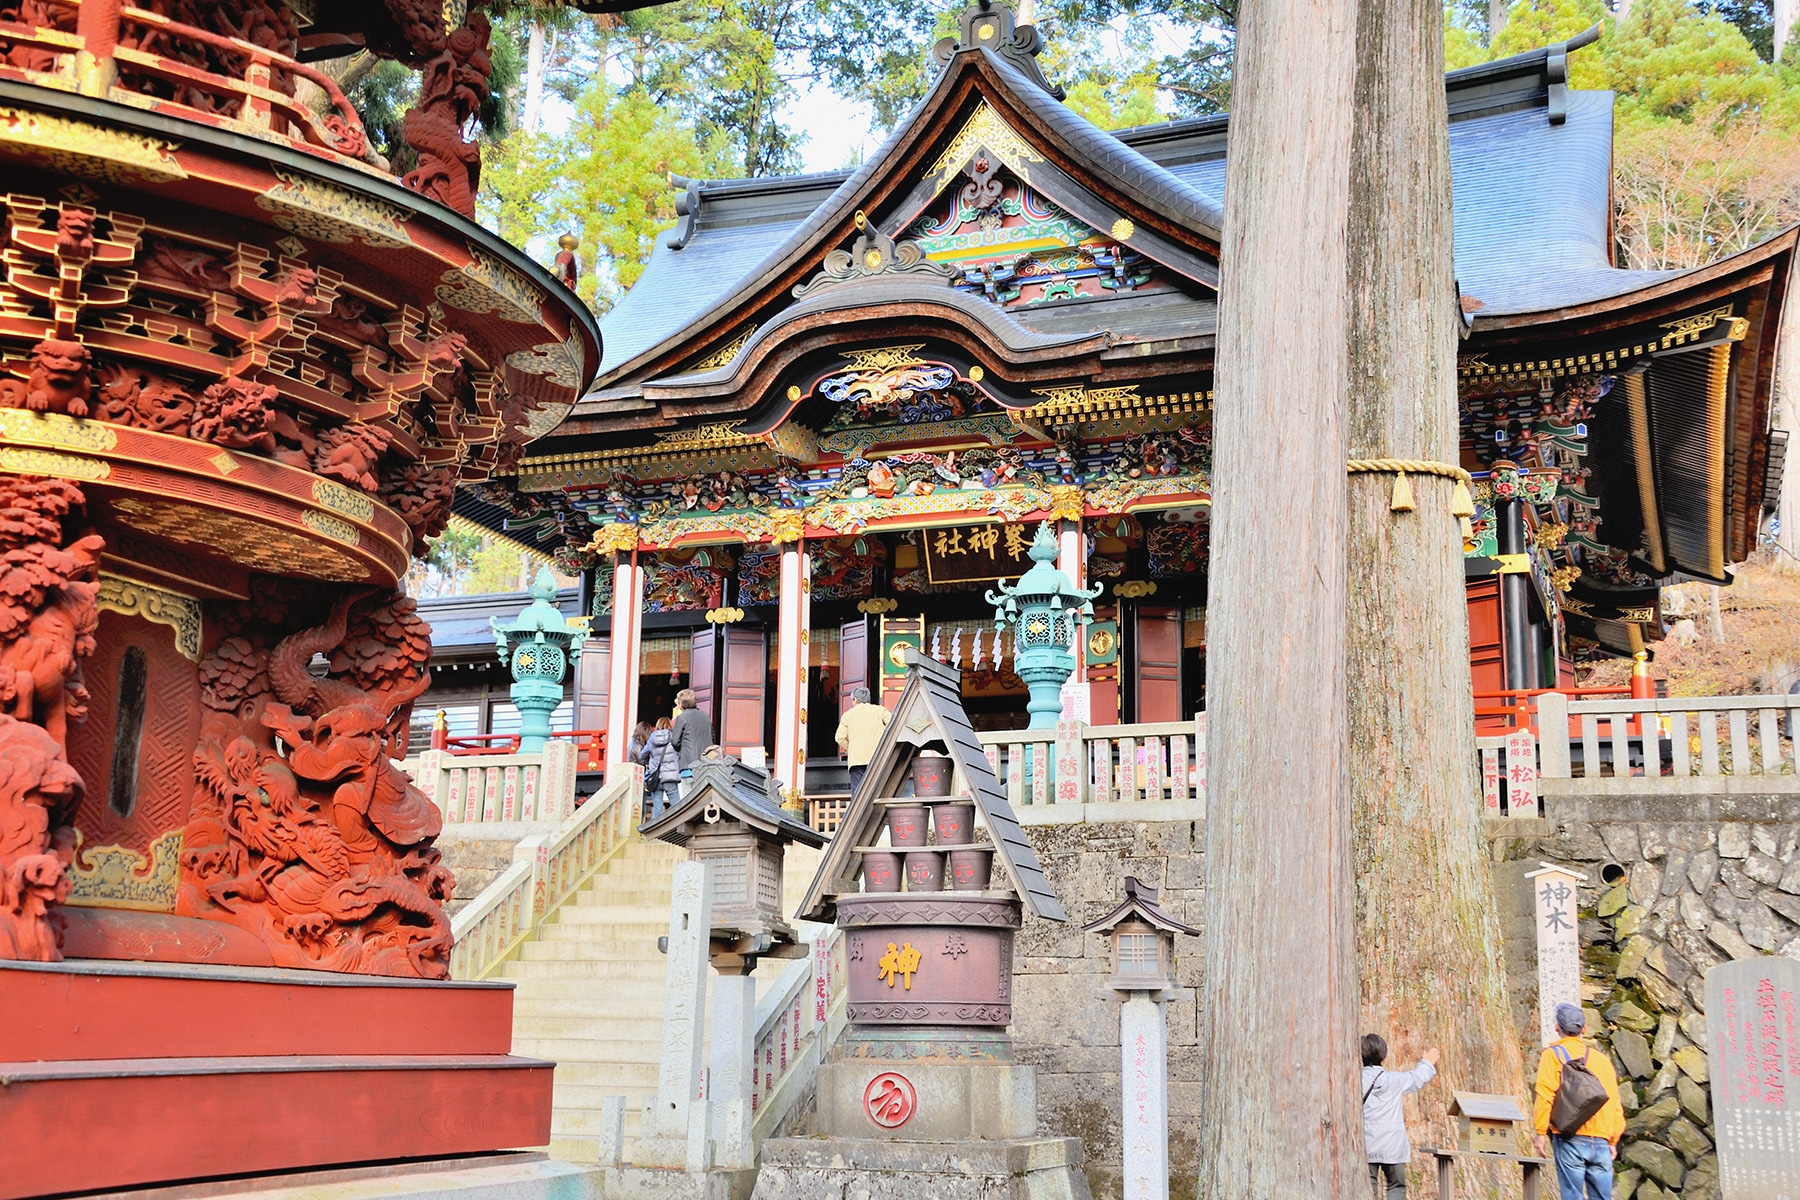 モミジ（紅葉） 秩父三峯神社